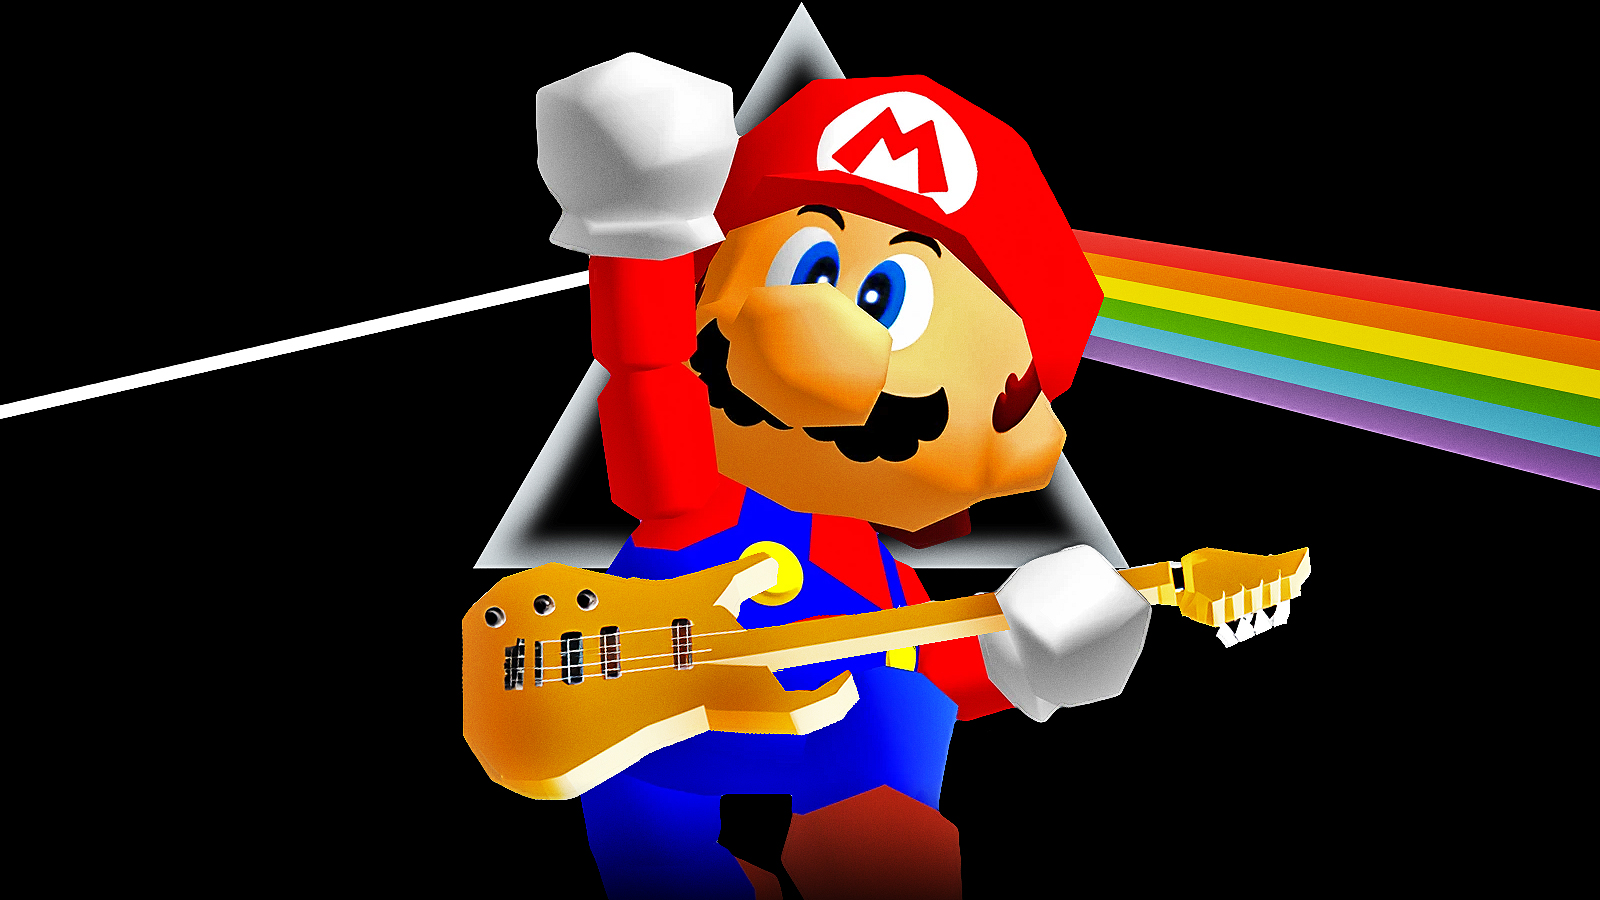 Super Mario 64core: sta nascendo un nuovo genere musicale?